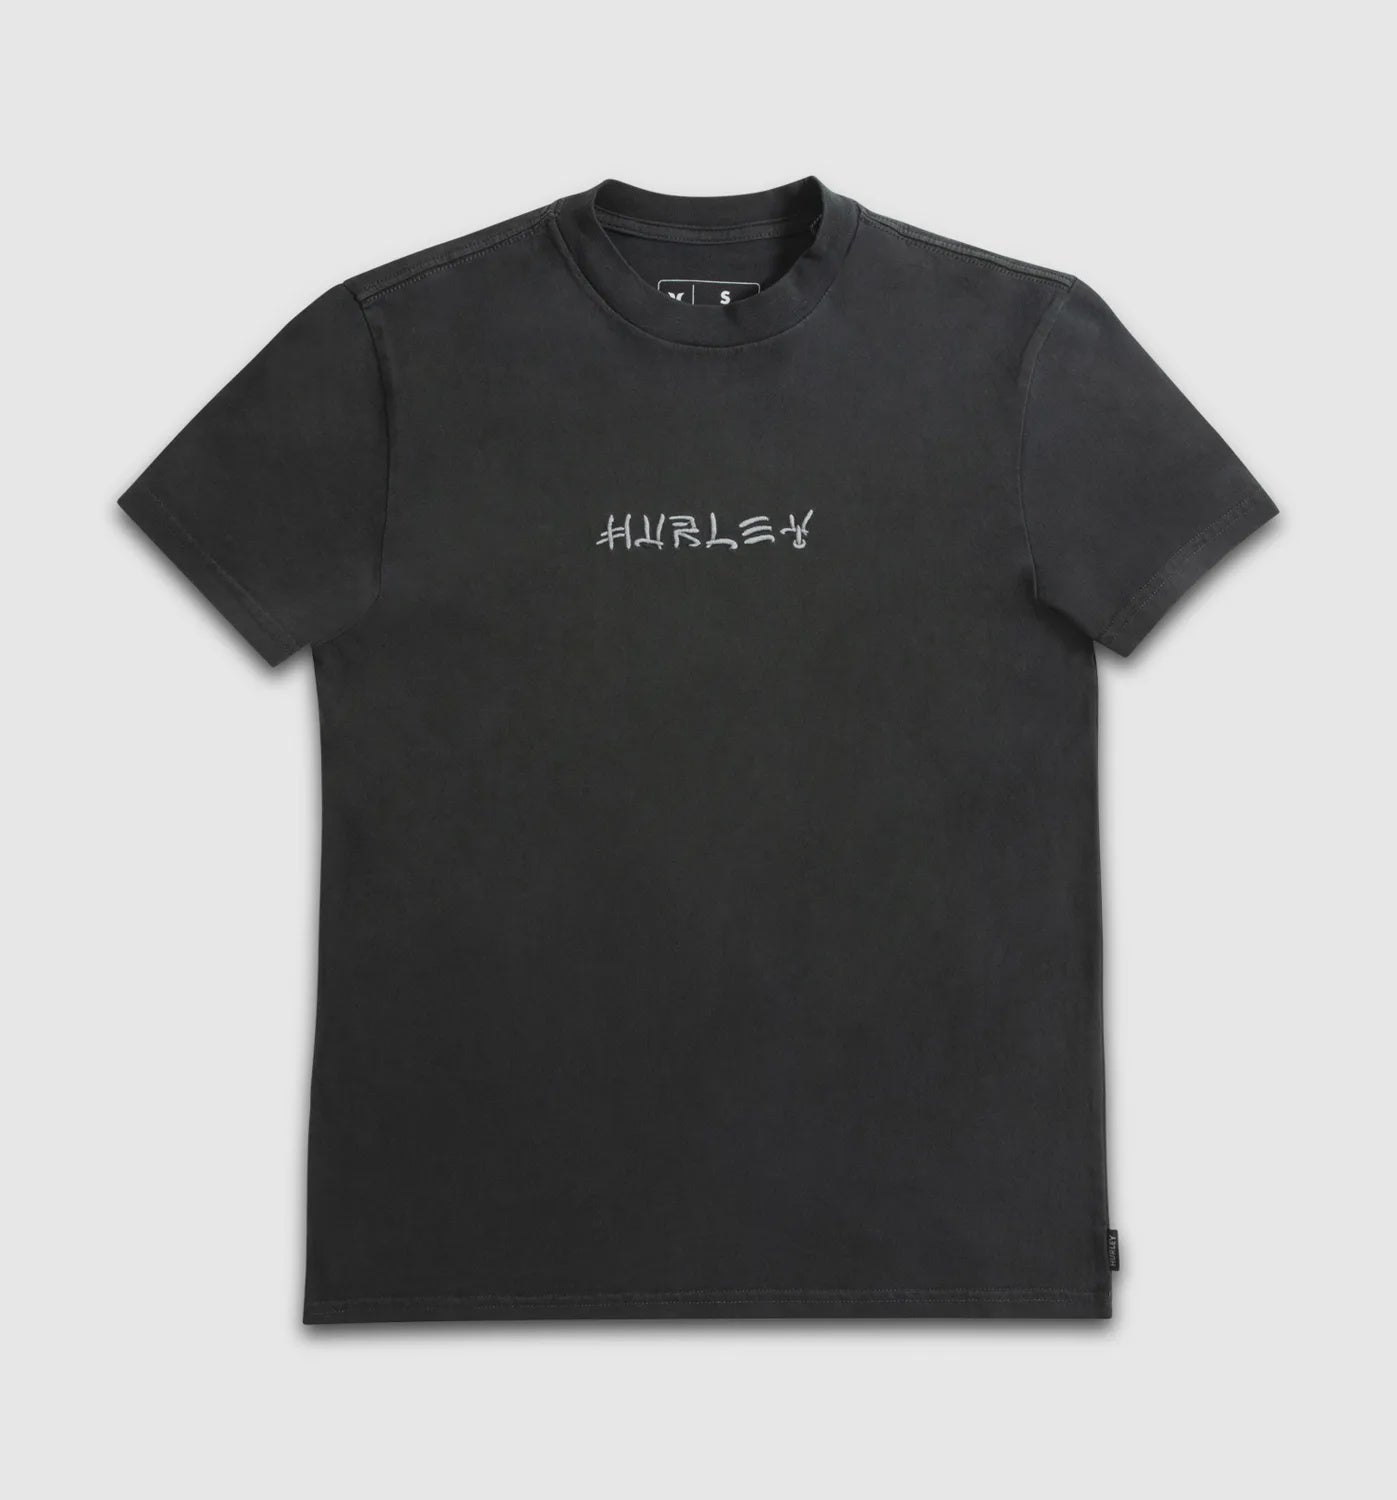 Destroy Hurley Kids T Shirt